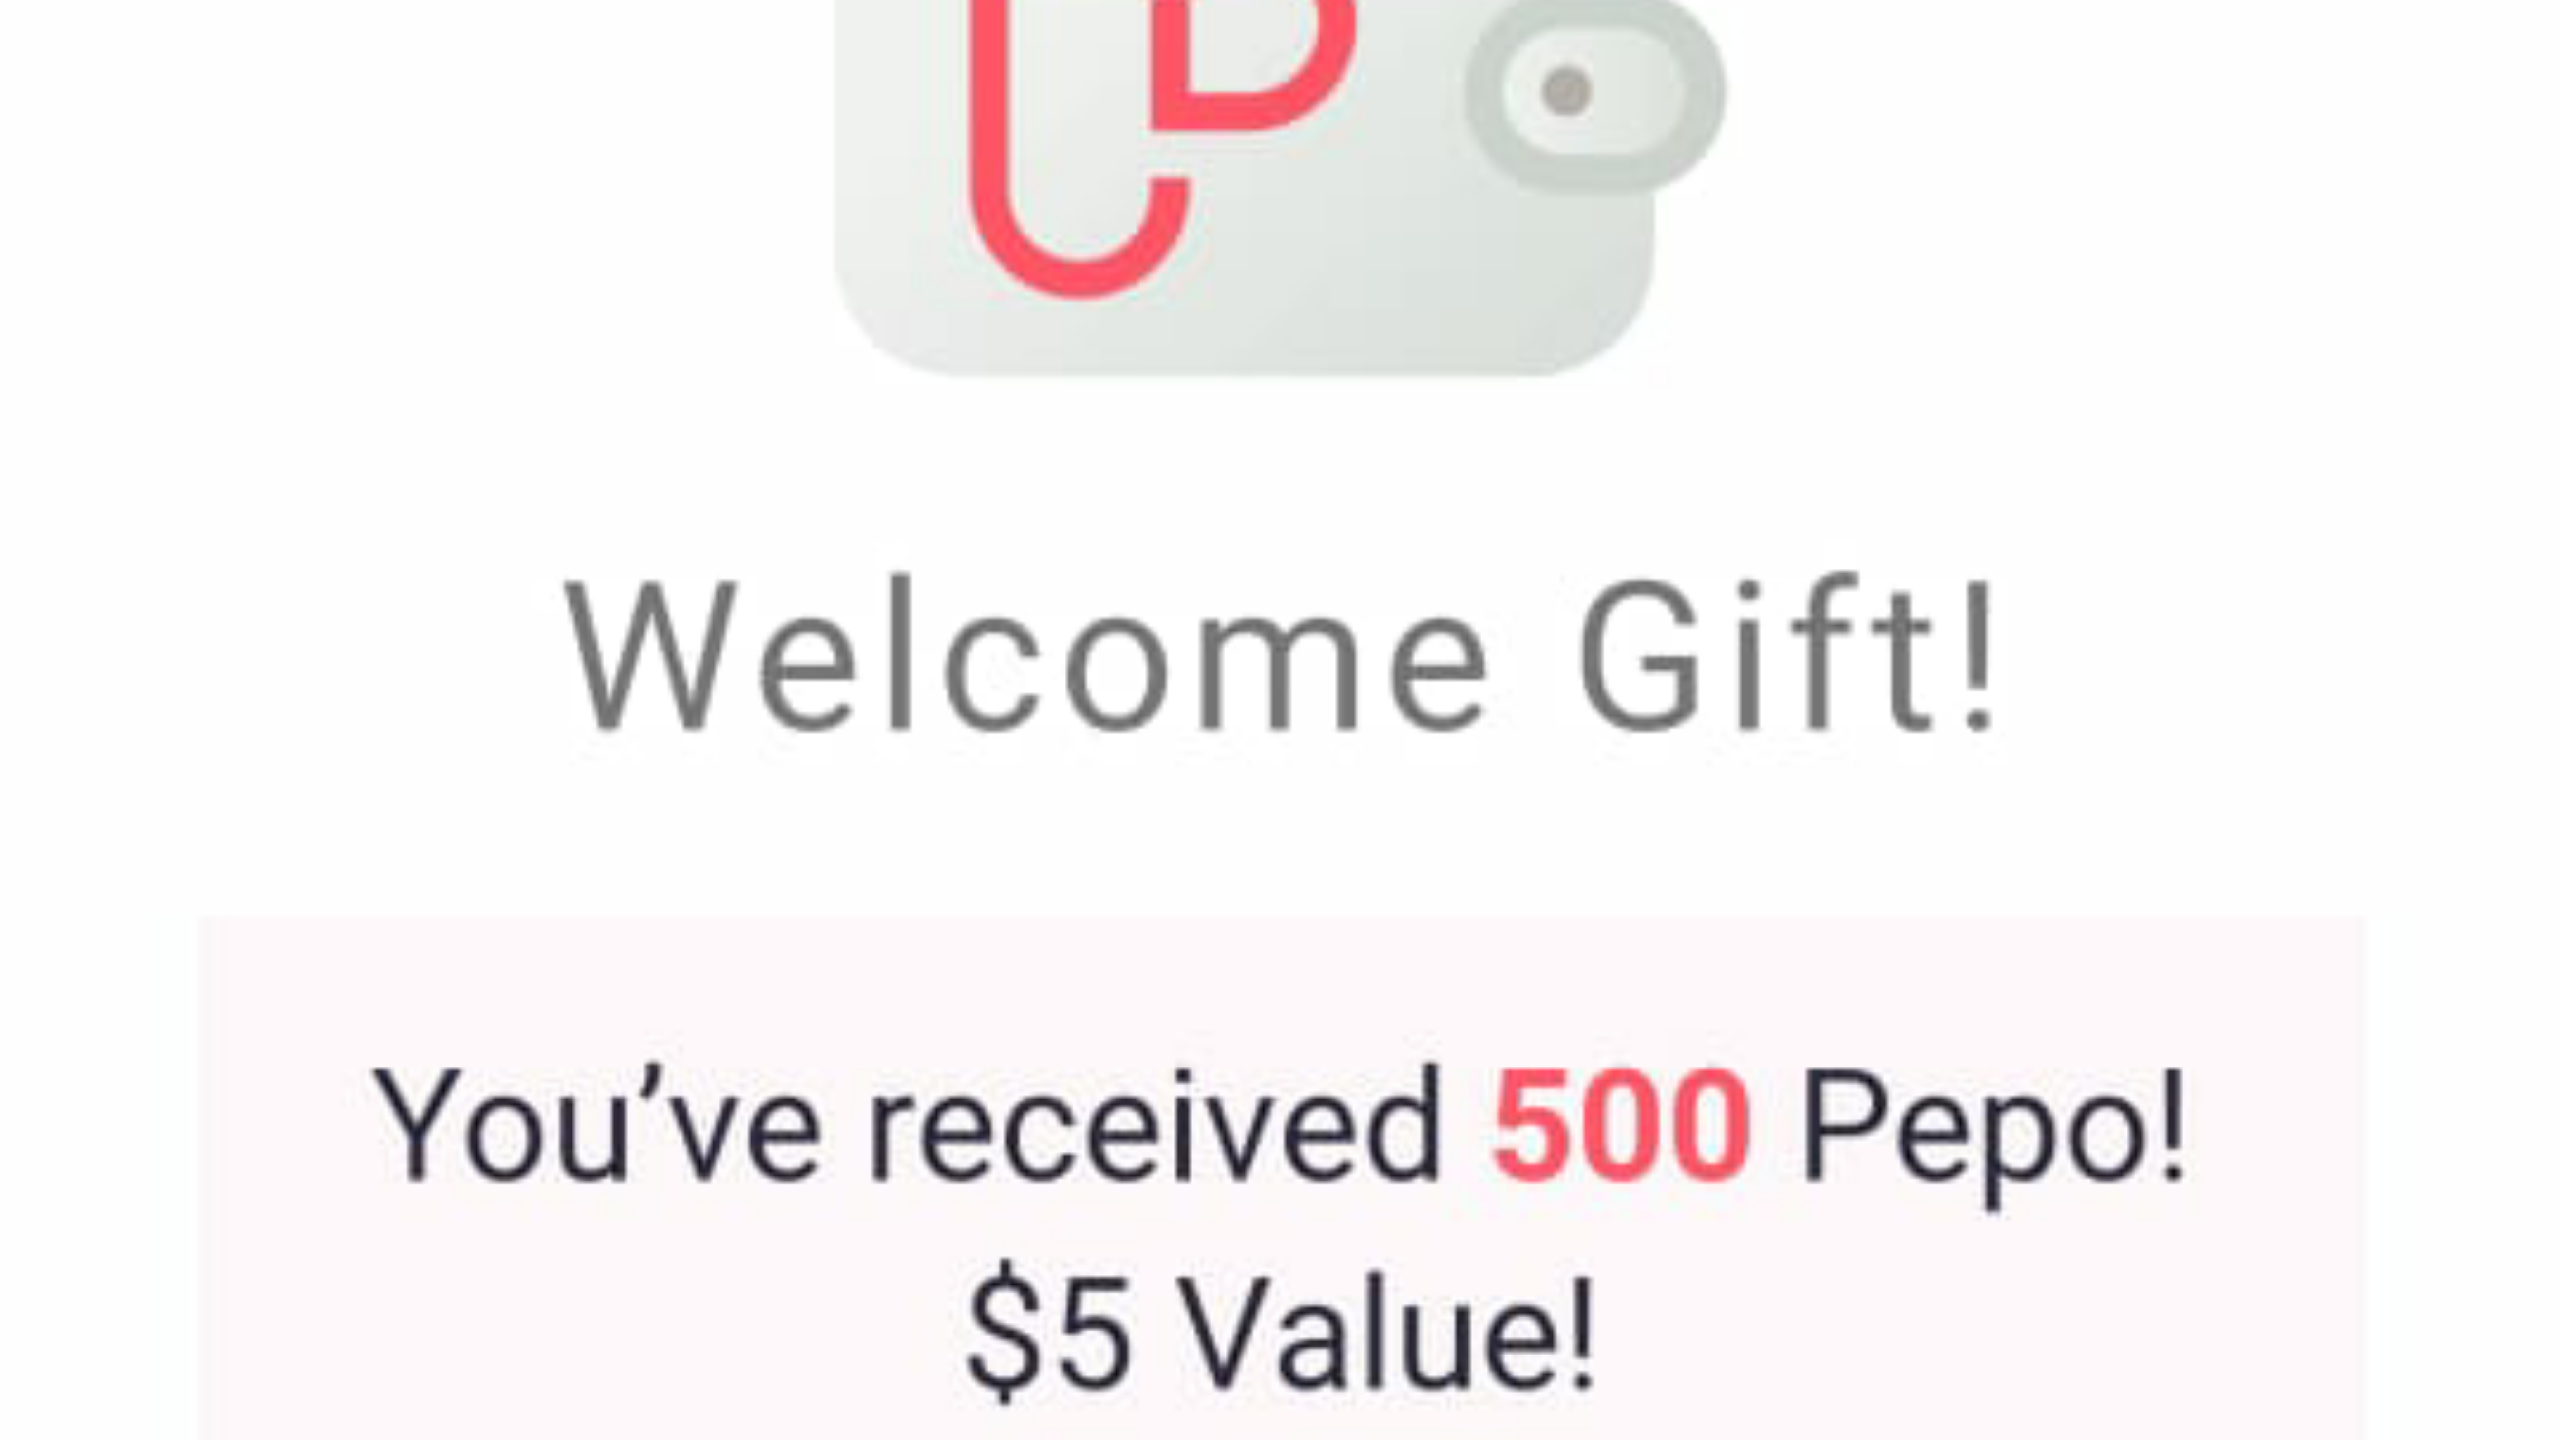 Airdrop pepo app free 5$ setelah sukses registrasi dan jangan lupa buat video